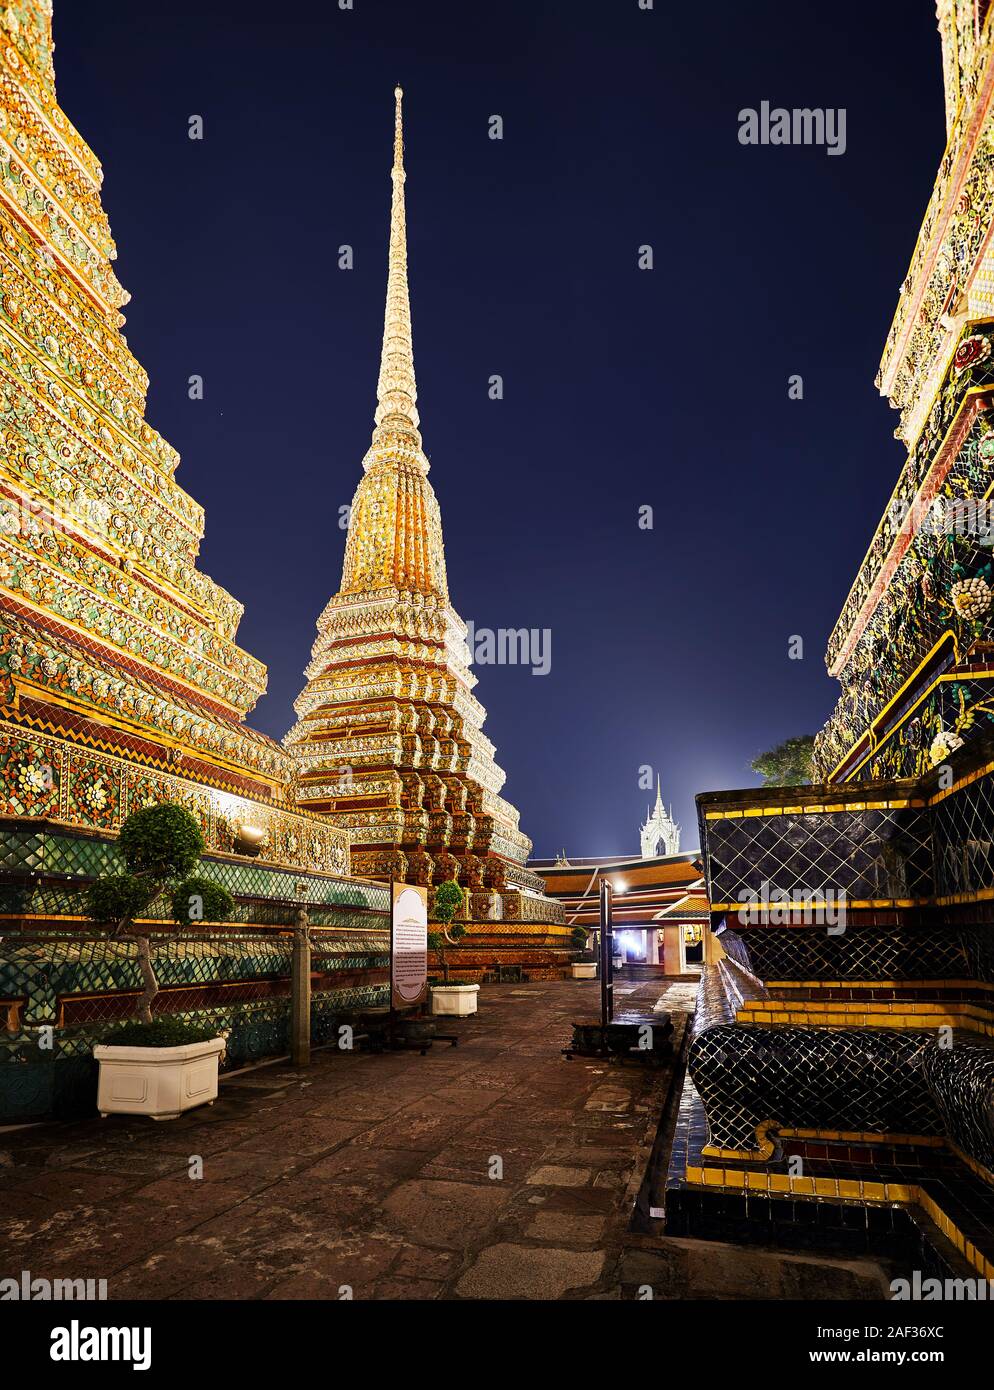 Buddhistischen Tempel Wat Pho mit goldenen Chedi in Bangkok bei Nacht Himmel in Thailand. Wahrzeichen und Sehenswürdigkeiten der Stadt. Stockfoto